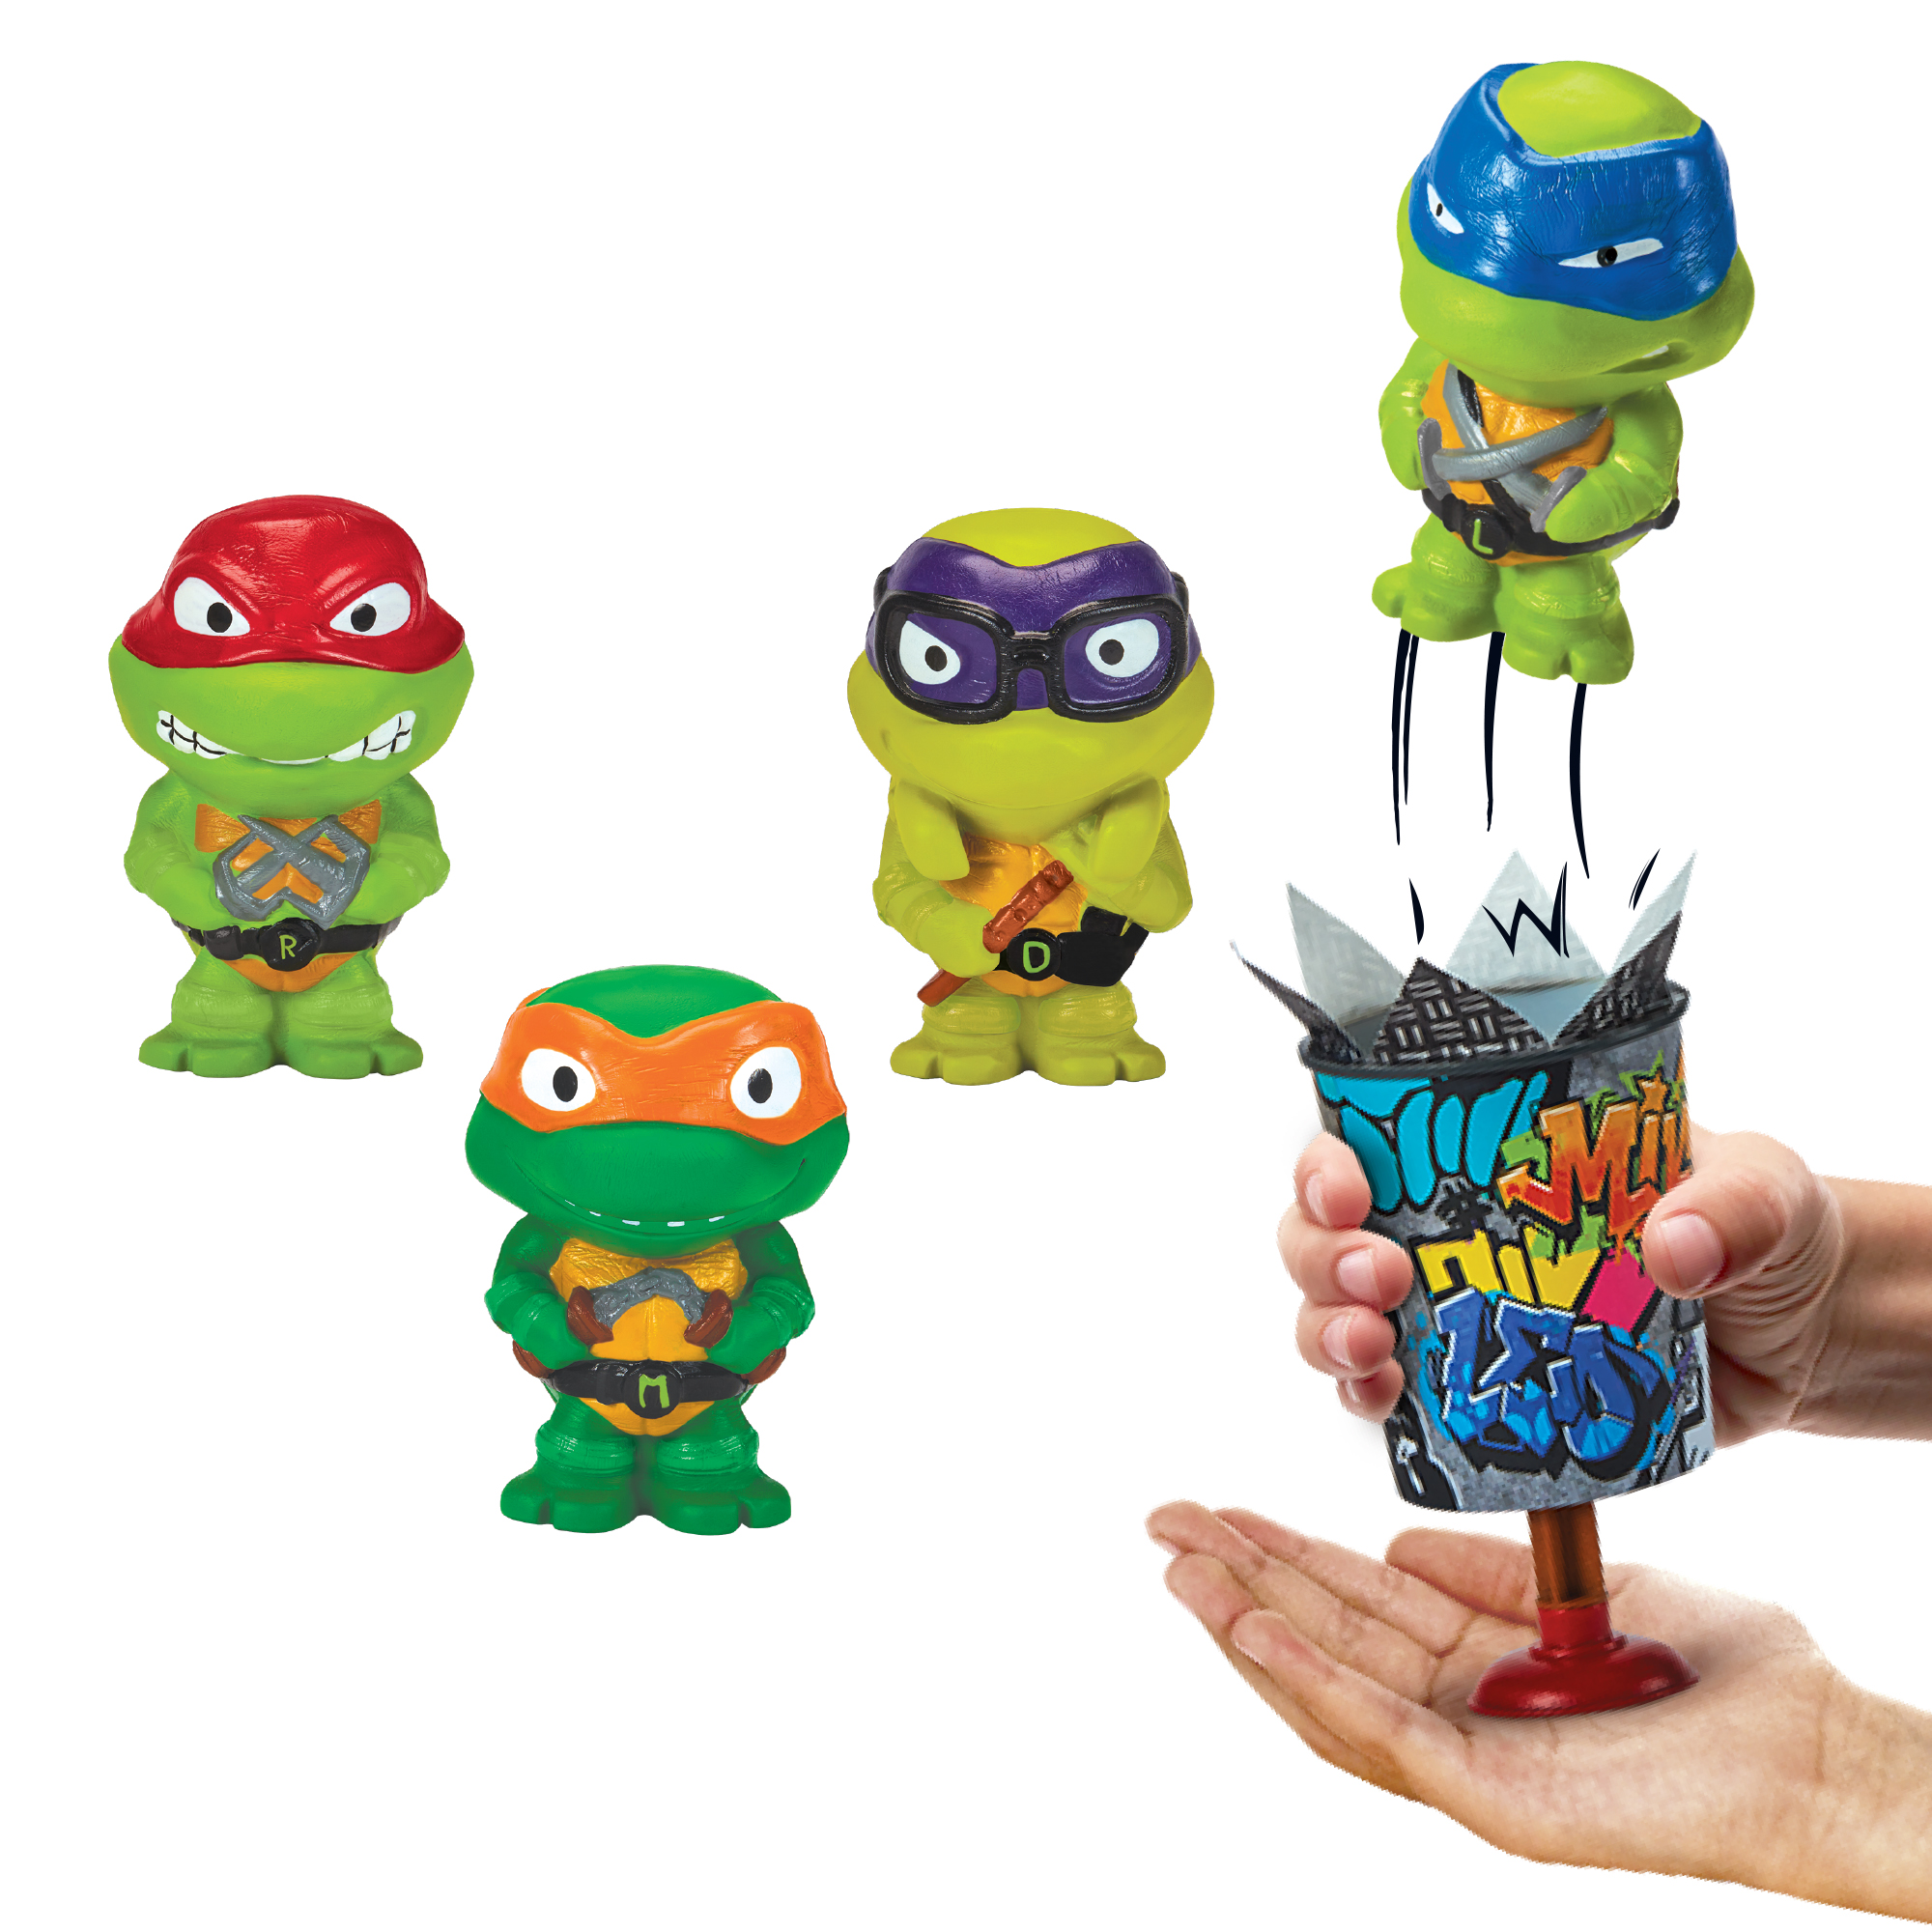 Playmates Toys Teenage Mutant Ninja Turtles Mutant Mayhem Wave 2 First Look